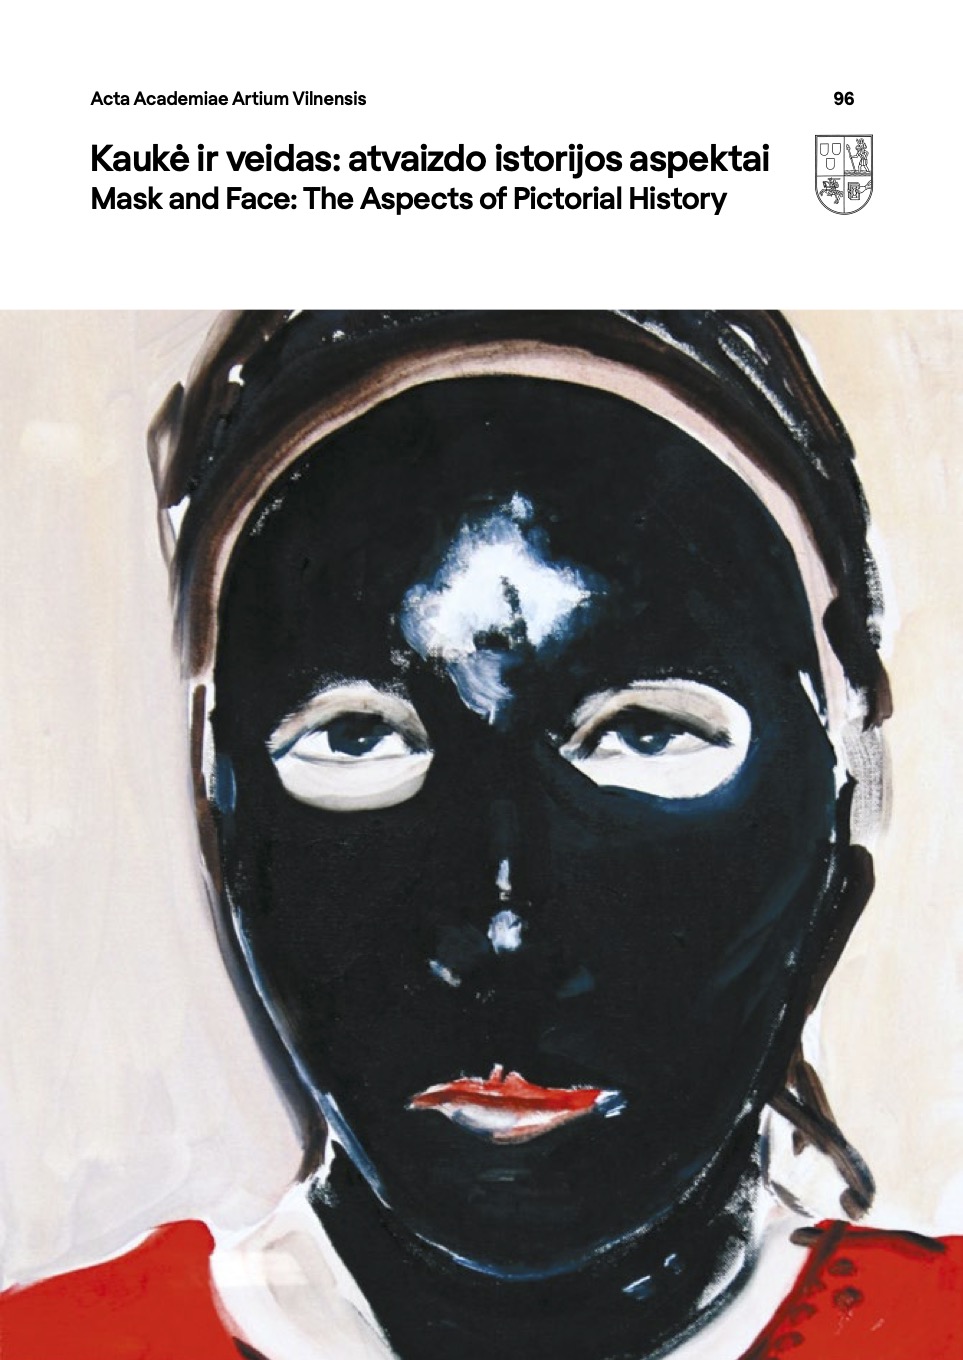 					View No. 96 (2020): Mask and Face: The Aspects of Pictorial History / Kaukė ir veidas: atvaizdo istorijos aspektas
				